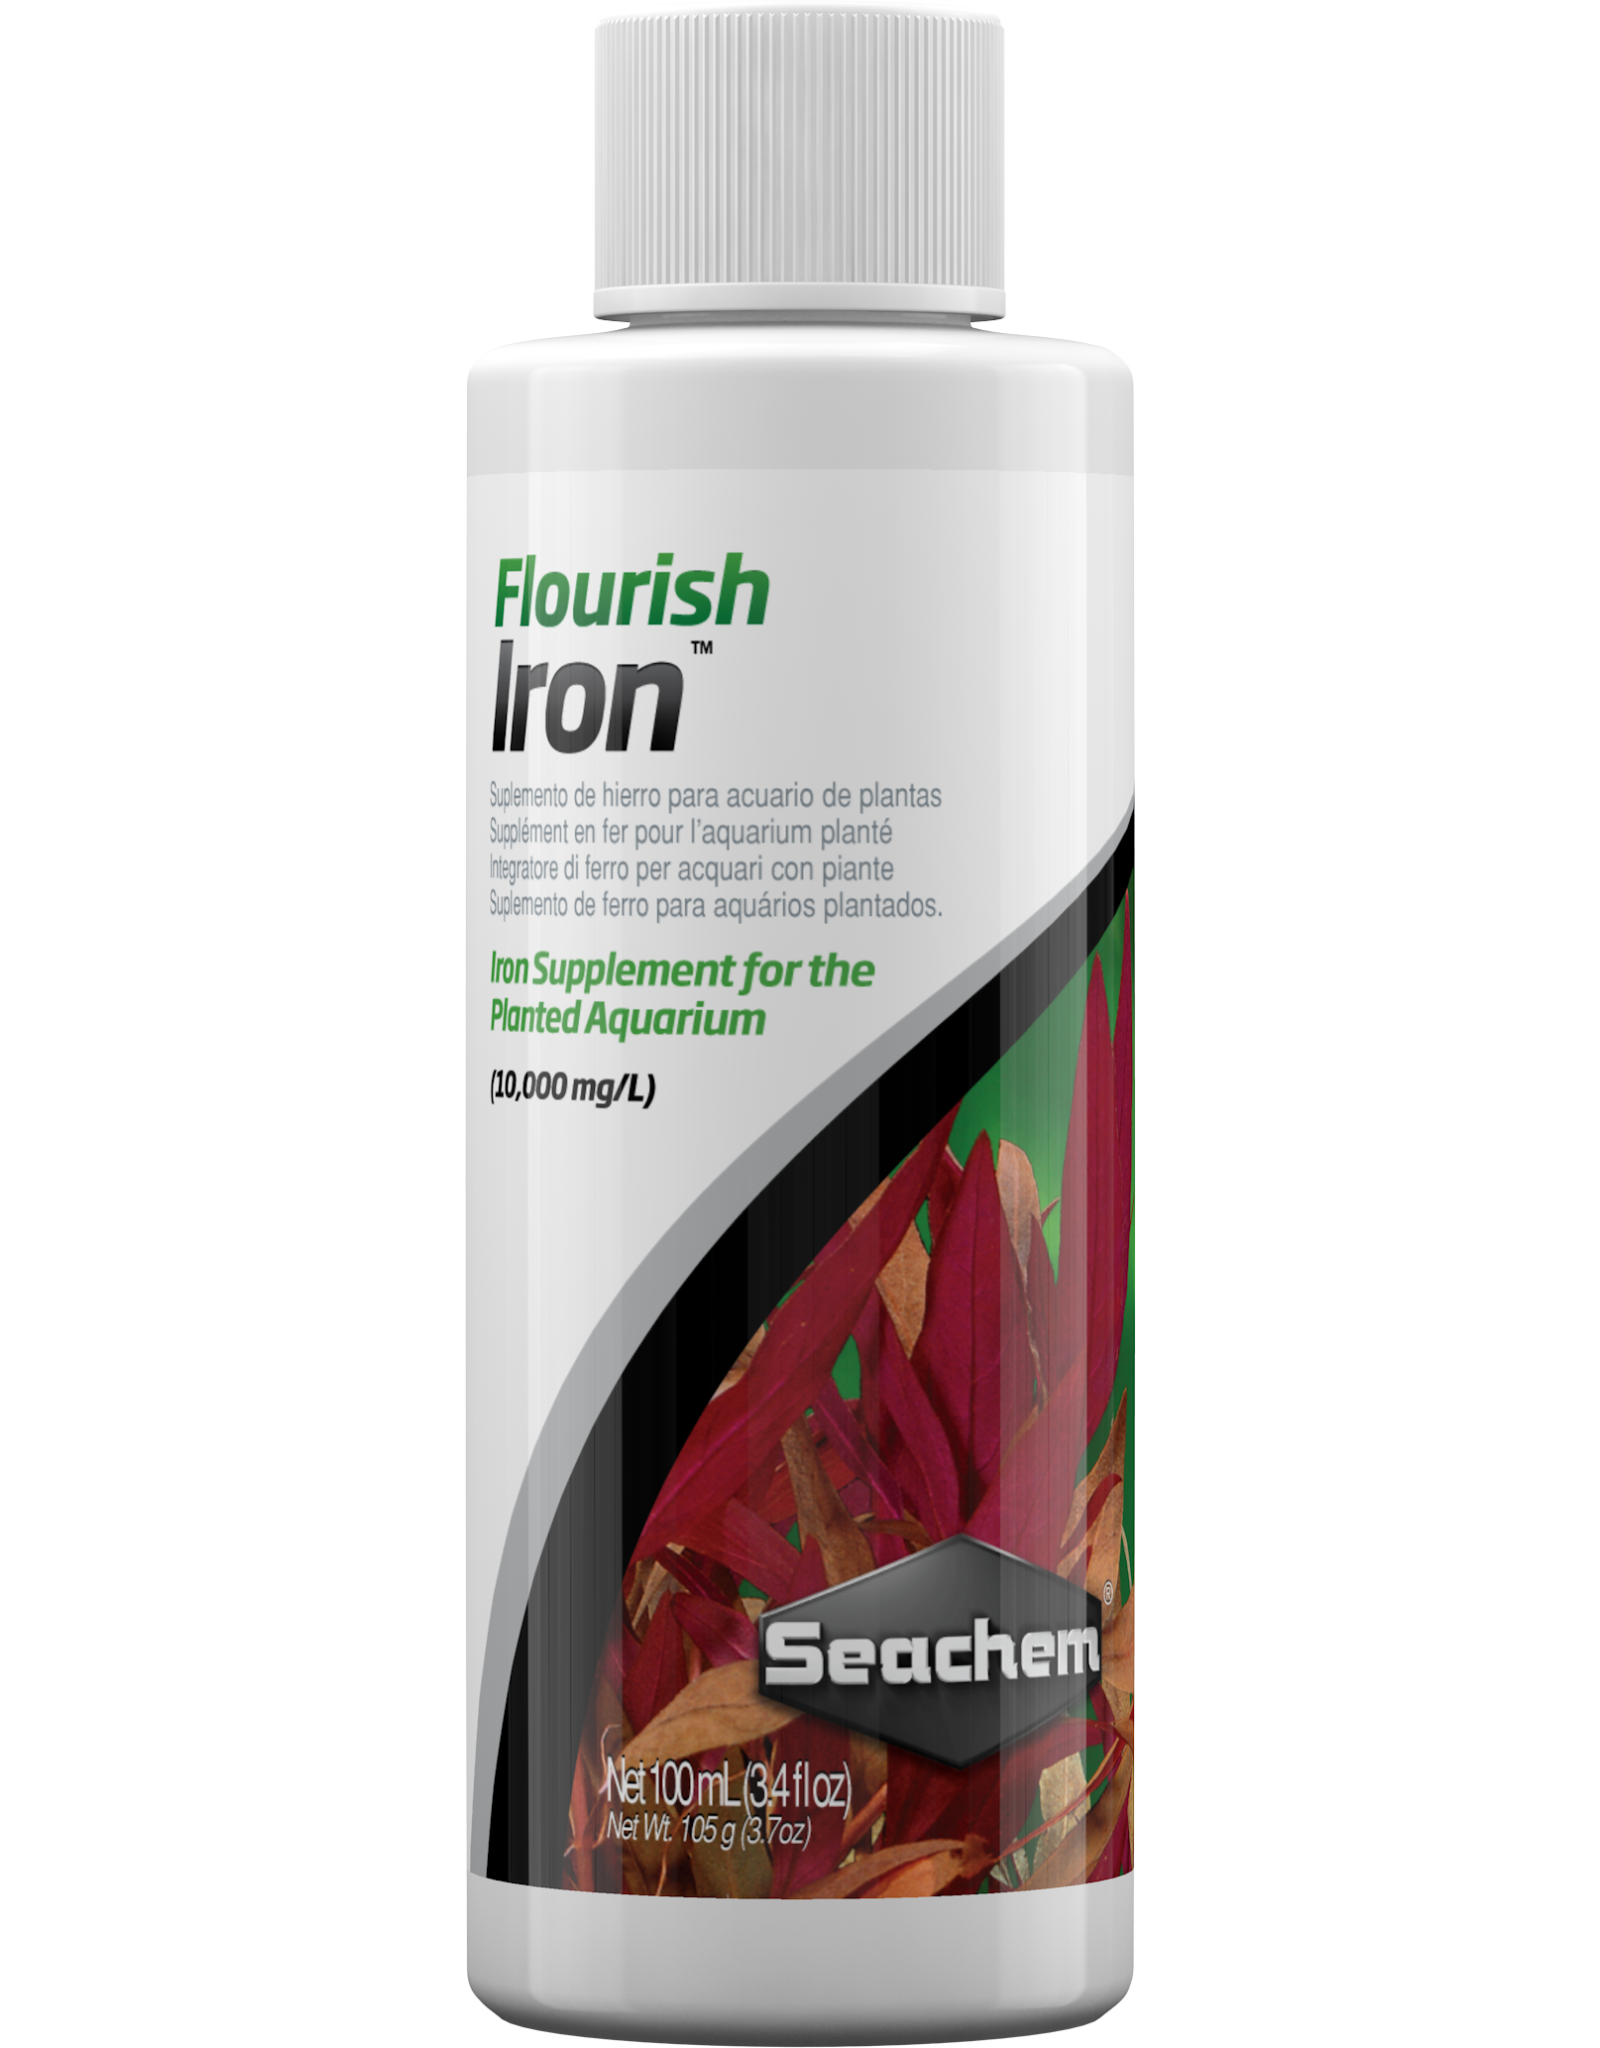 Seachem SEACHEM Flourish Iron